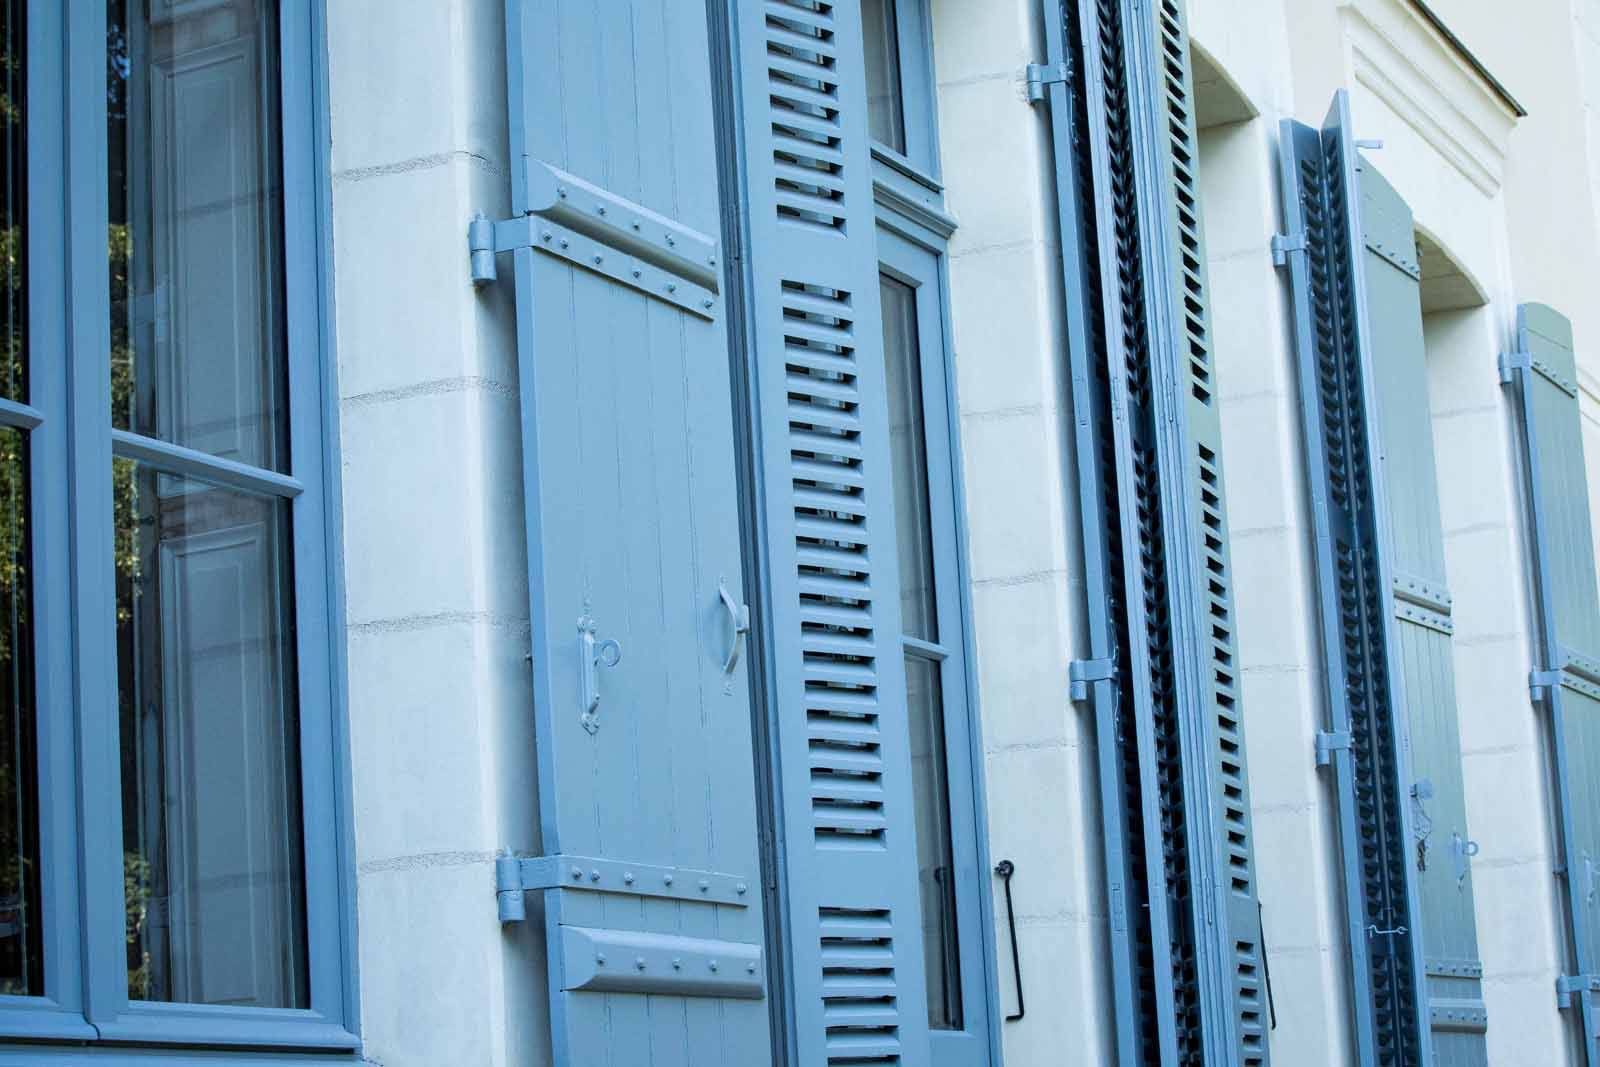 Fenêtres, portes, portes fenêtres et volets d'une maison angevine - Maine et Loire